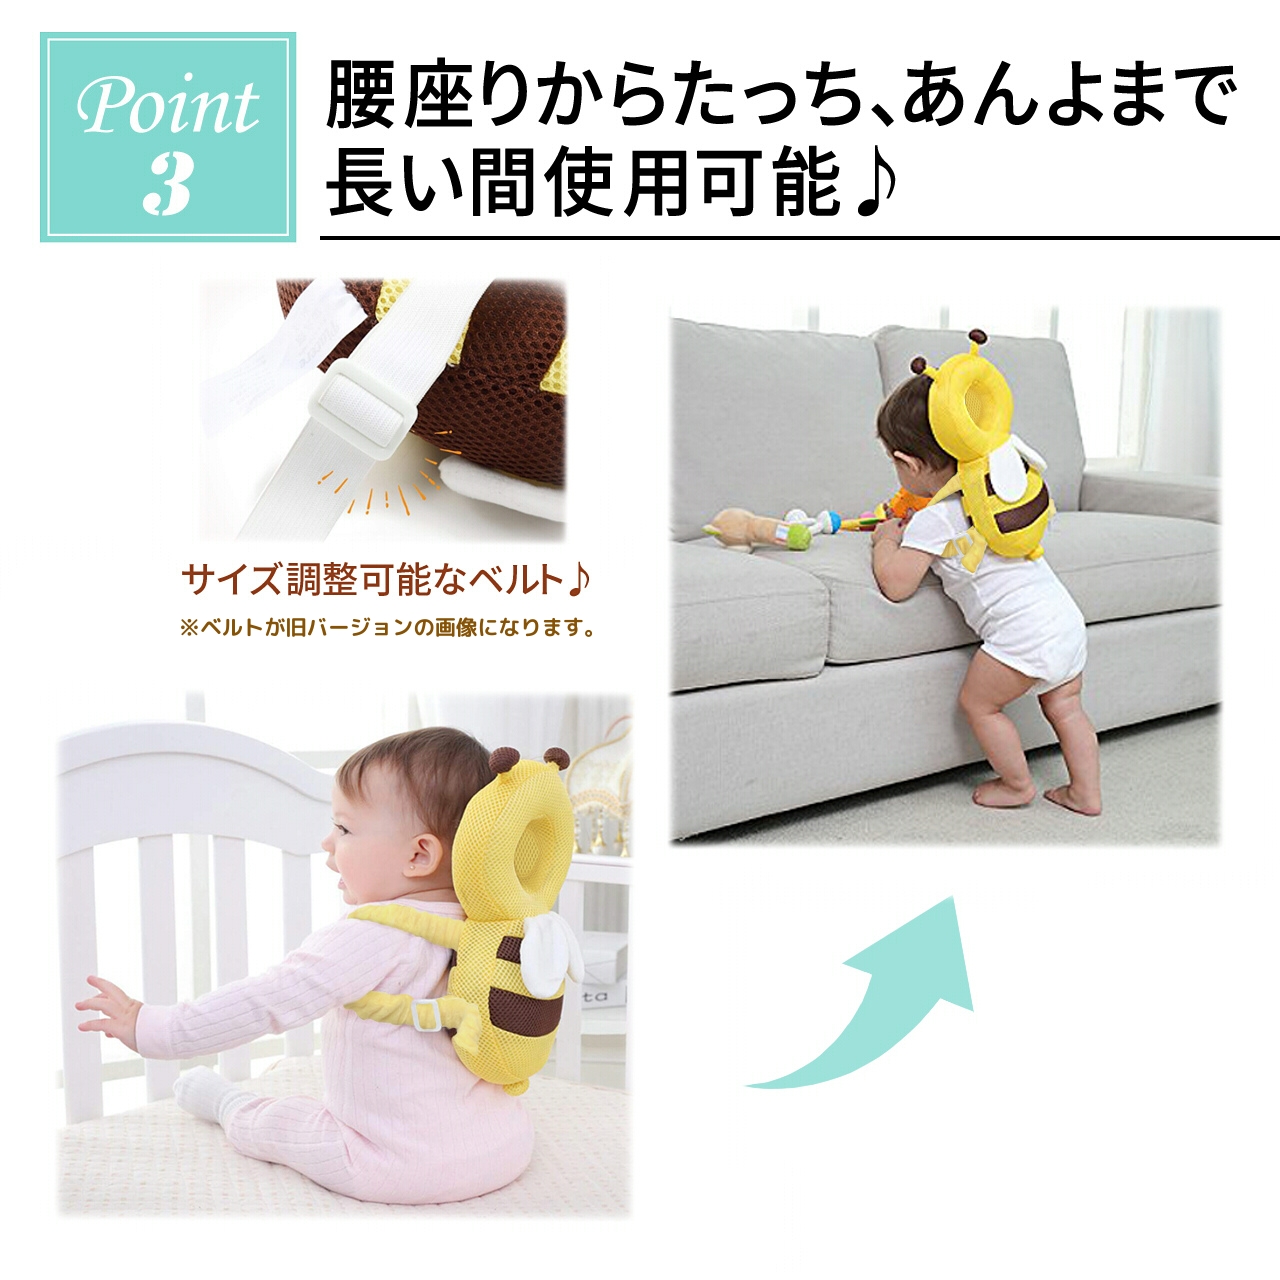 [ шнур улучшение версия ] CM...... симпатичный переворачивание предотвращение рюкзак head защита baby подушка младенец .... предотвращение шлем 